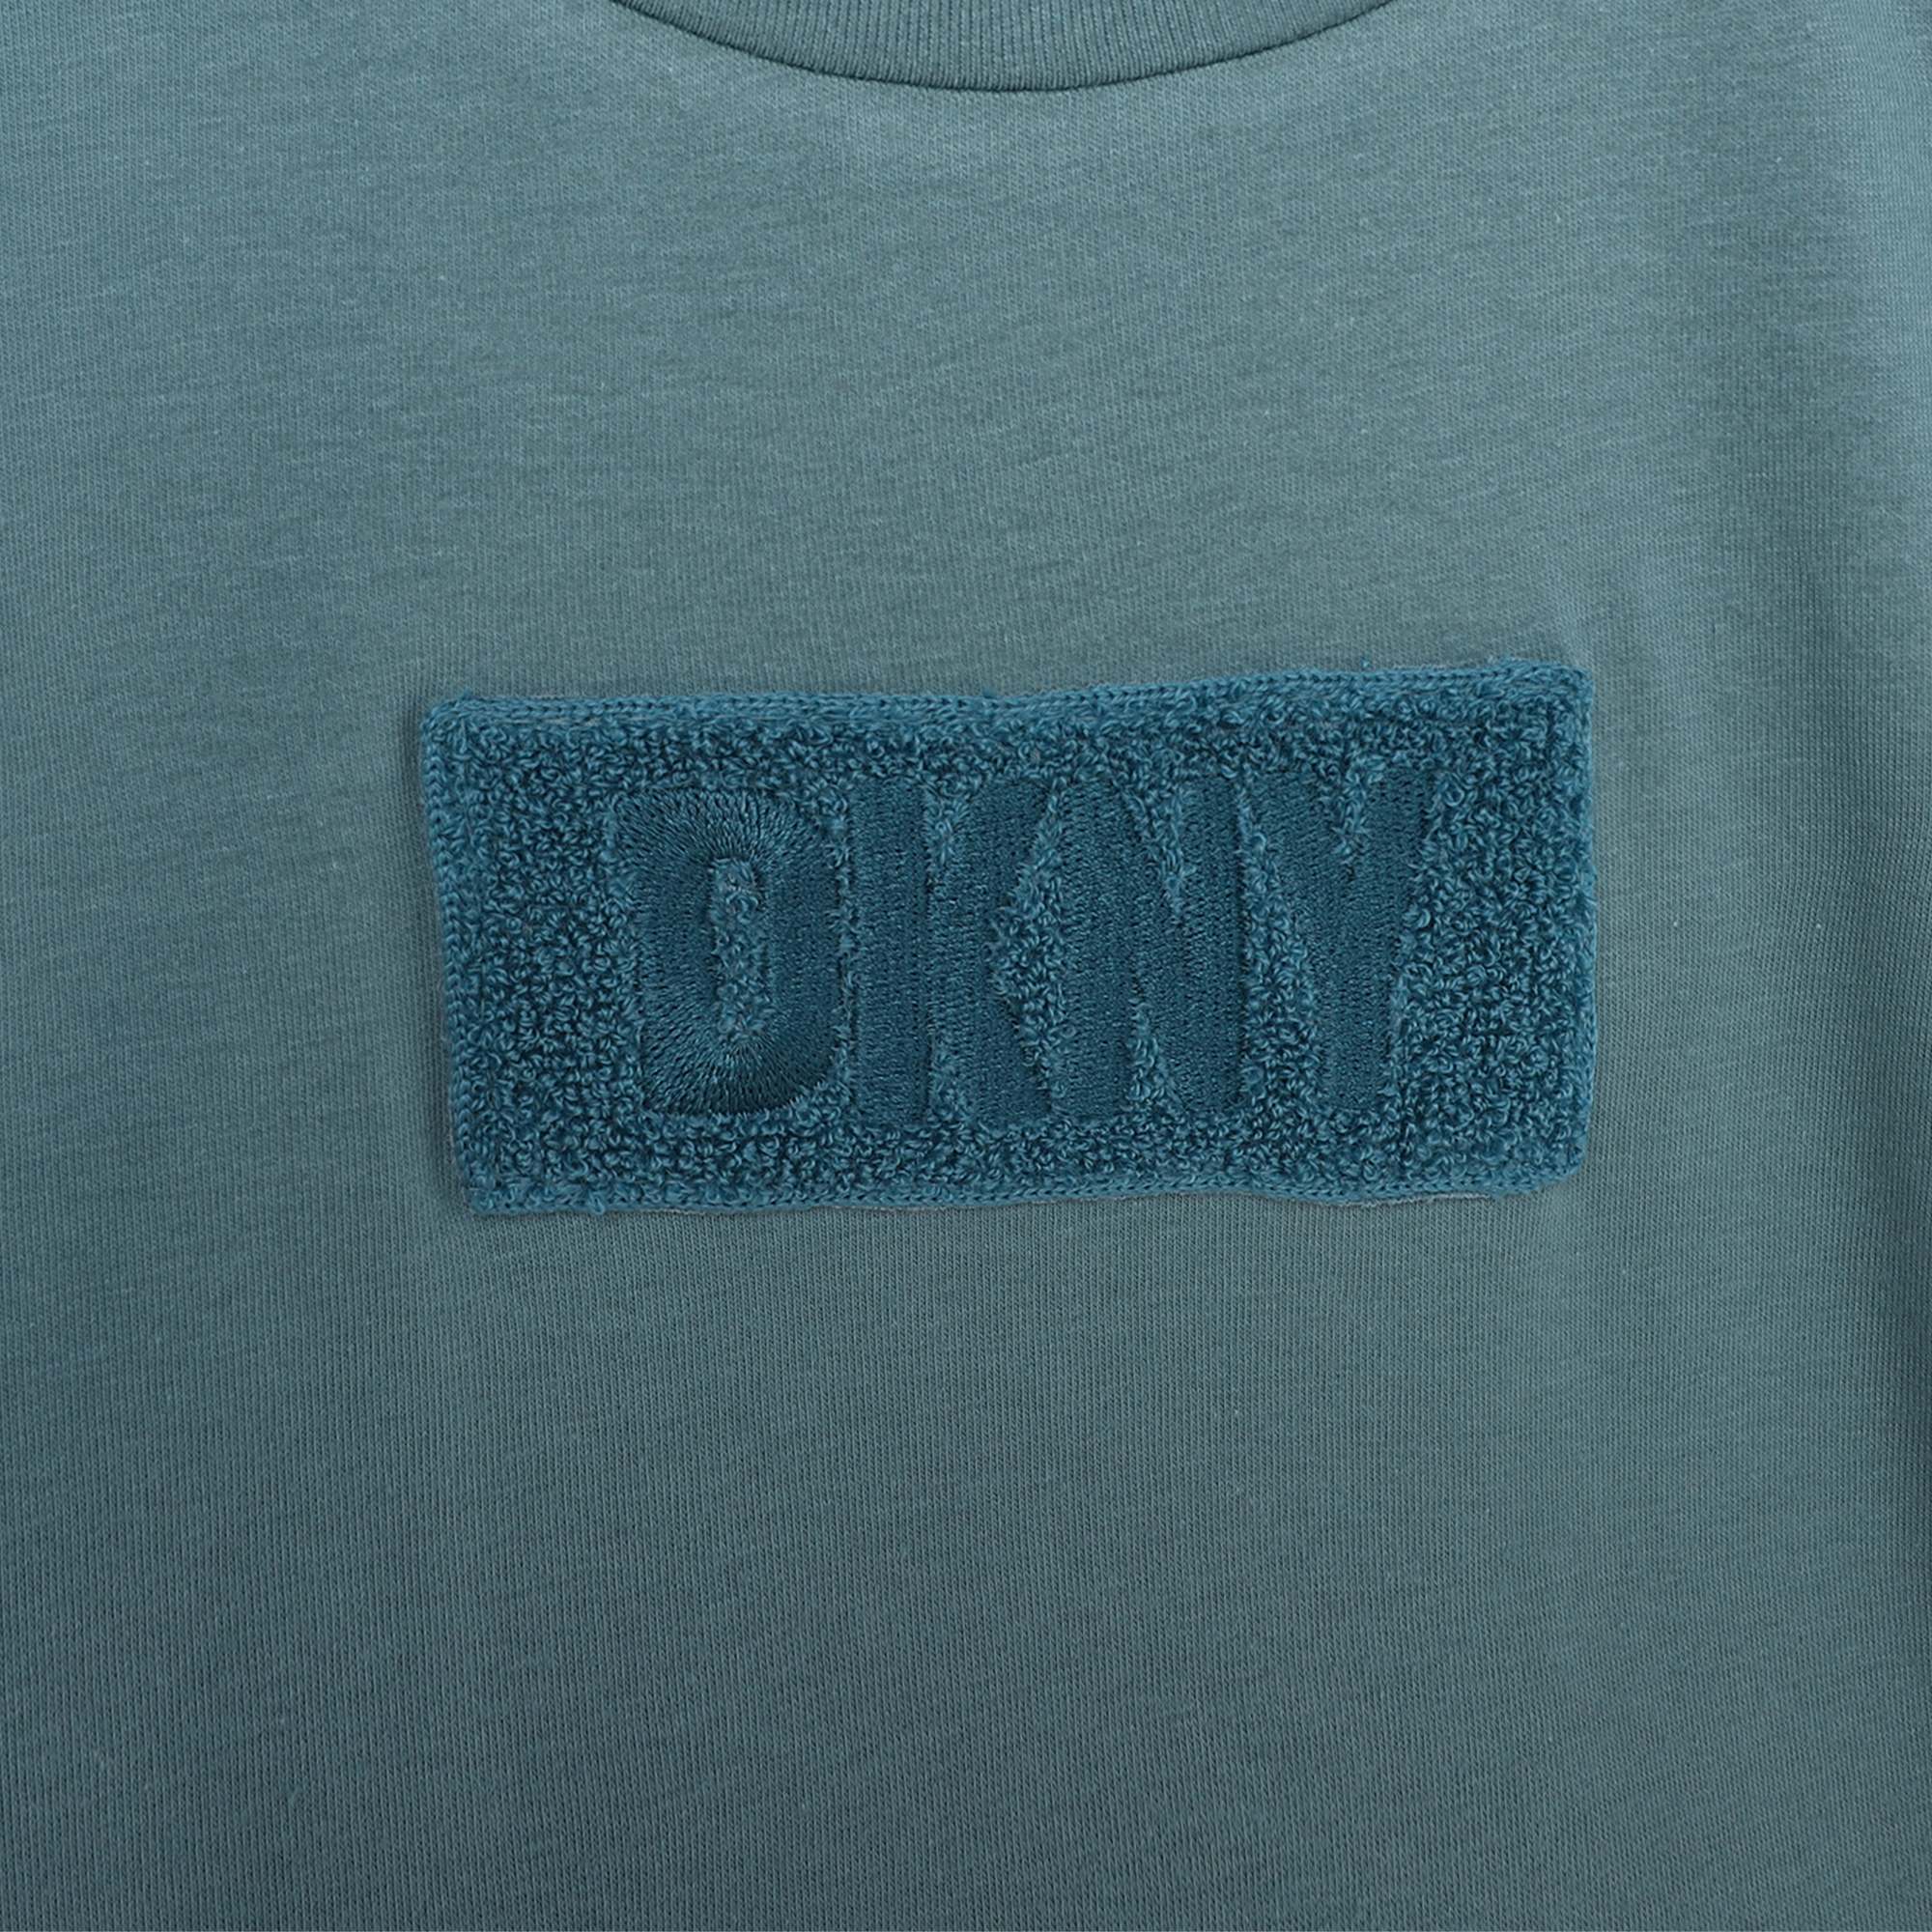 T-shirt in cotone DKNY Per BAMBINA